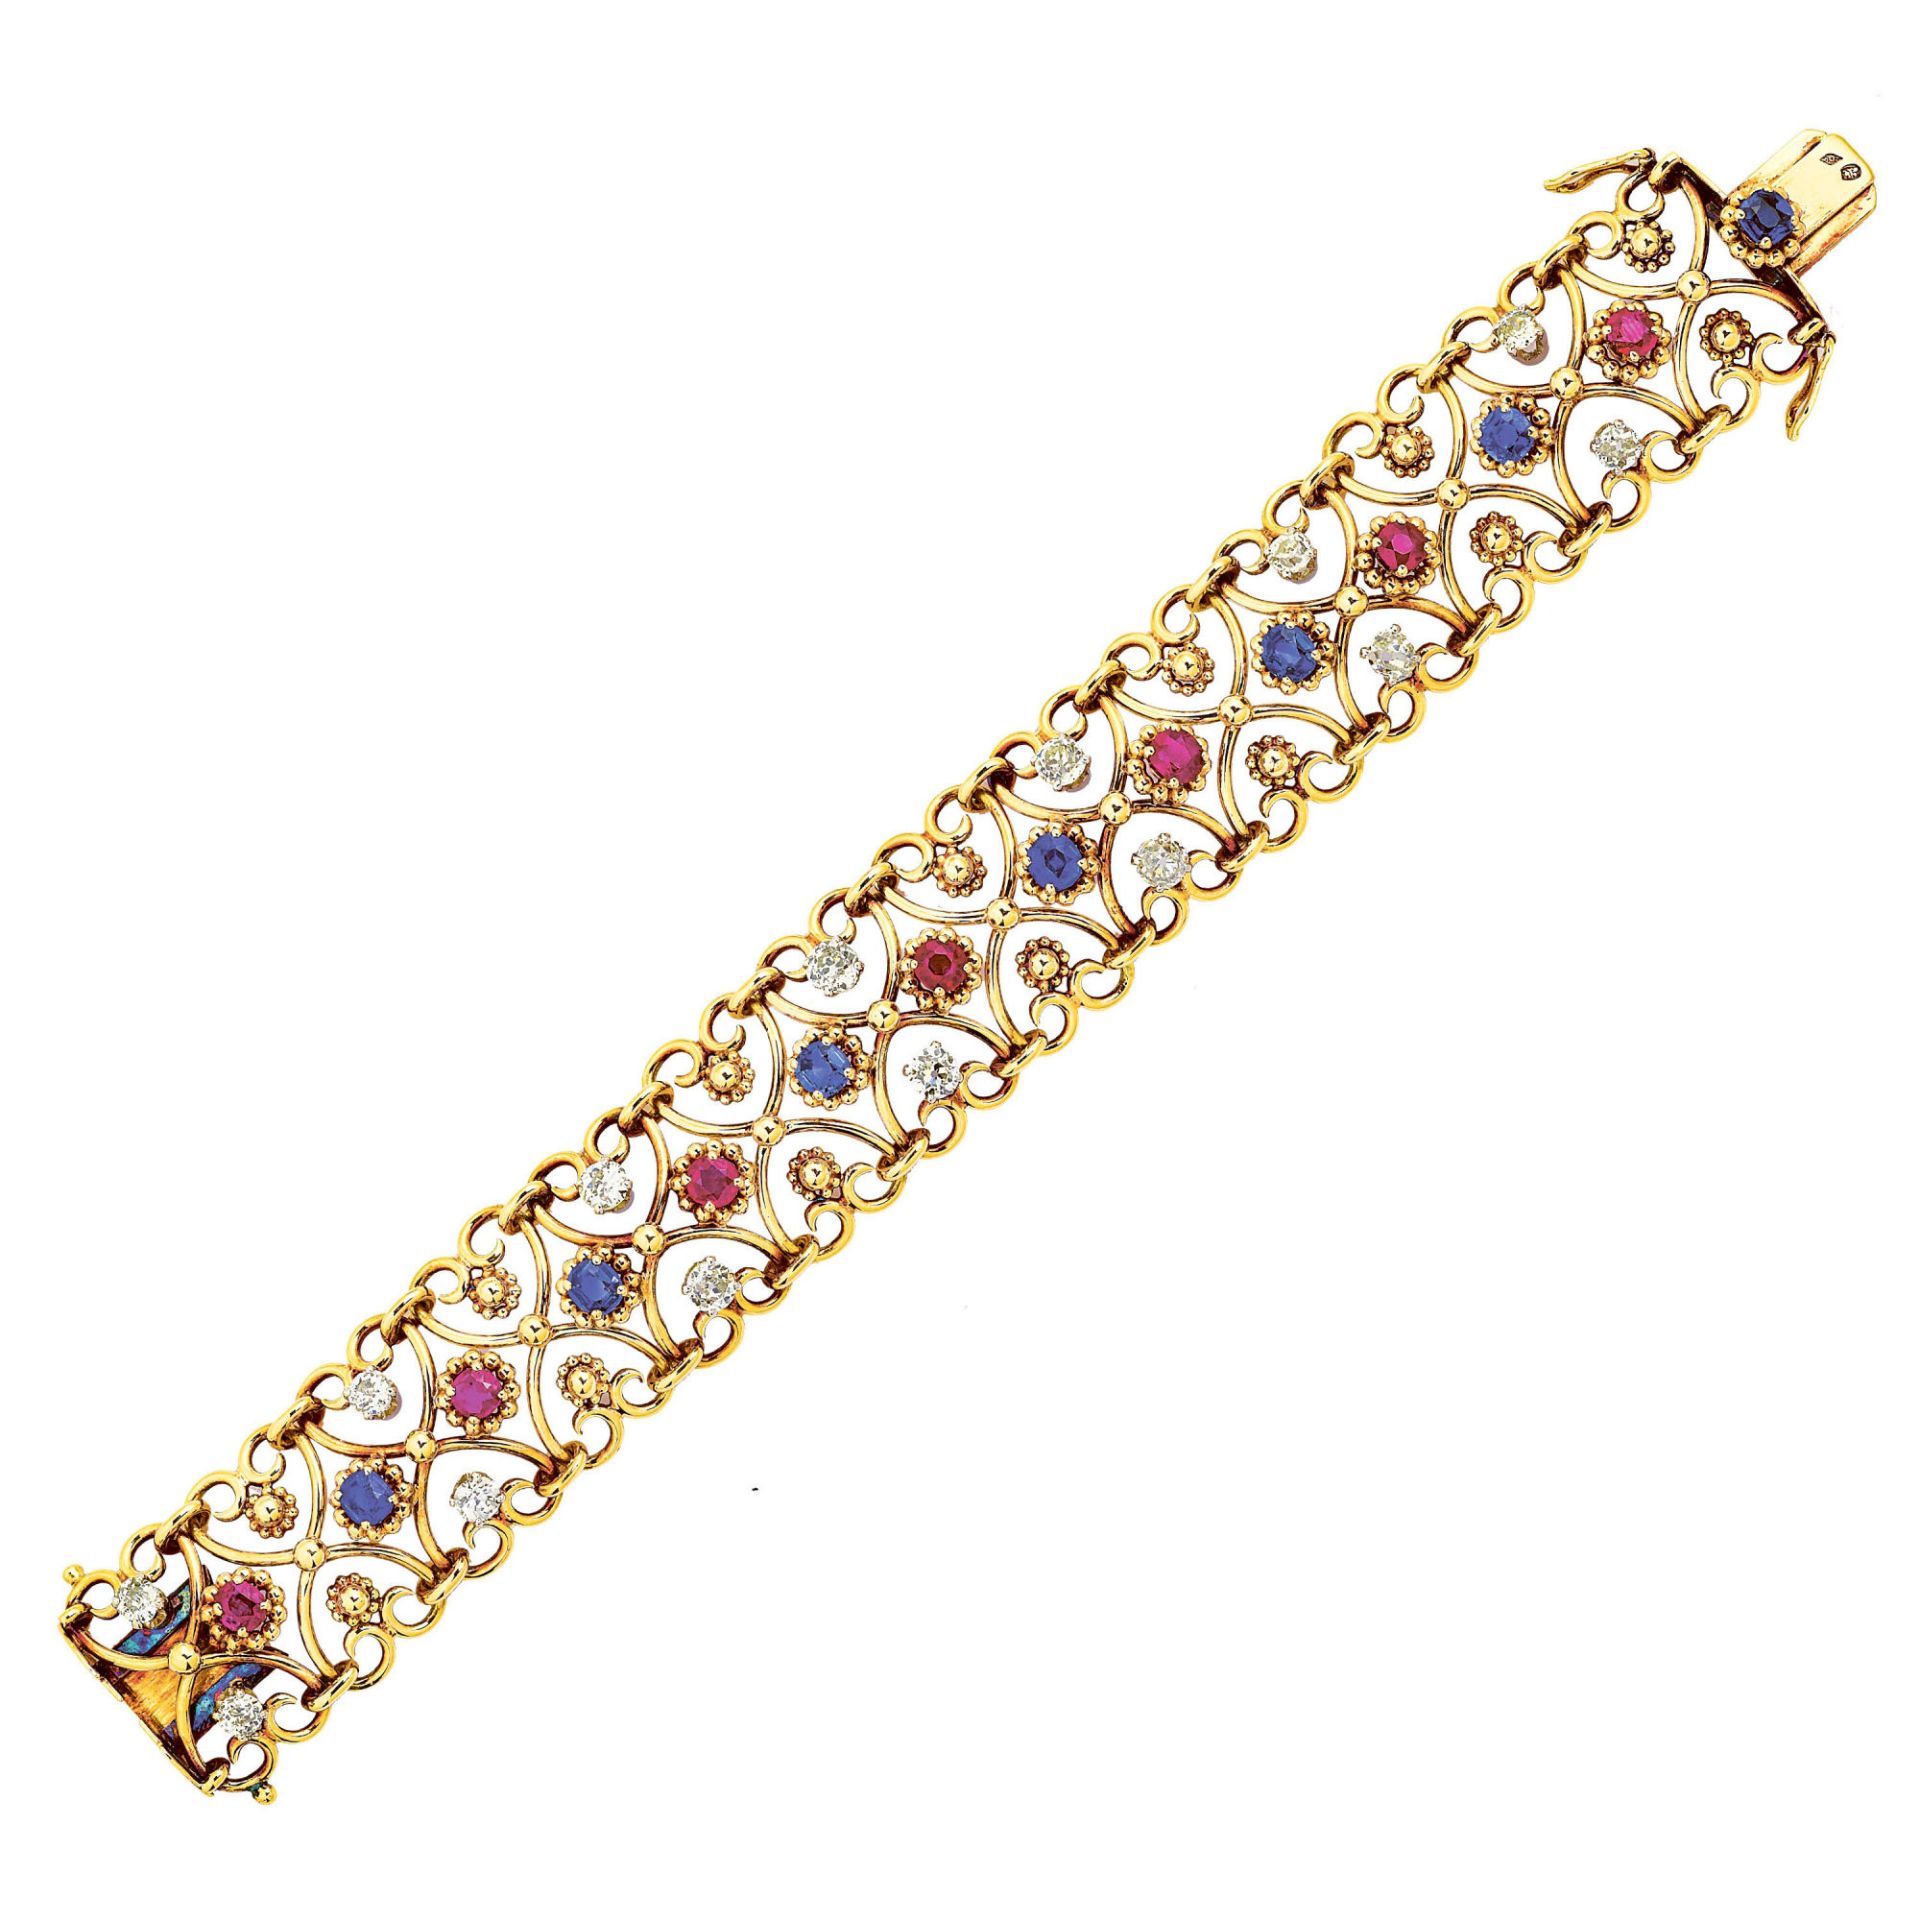 EDELSTEIN-BRACELET / Gemstone bracelet